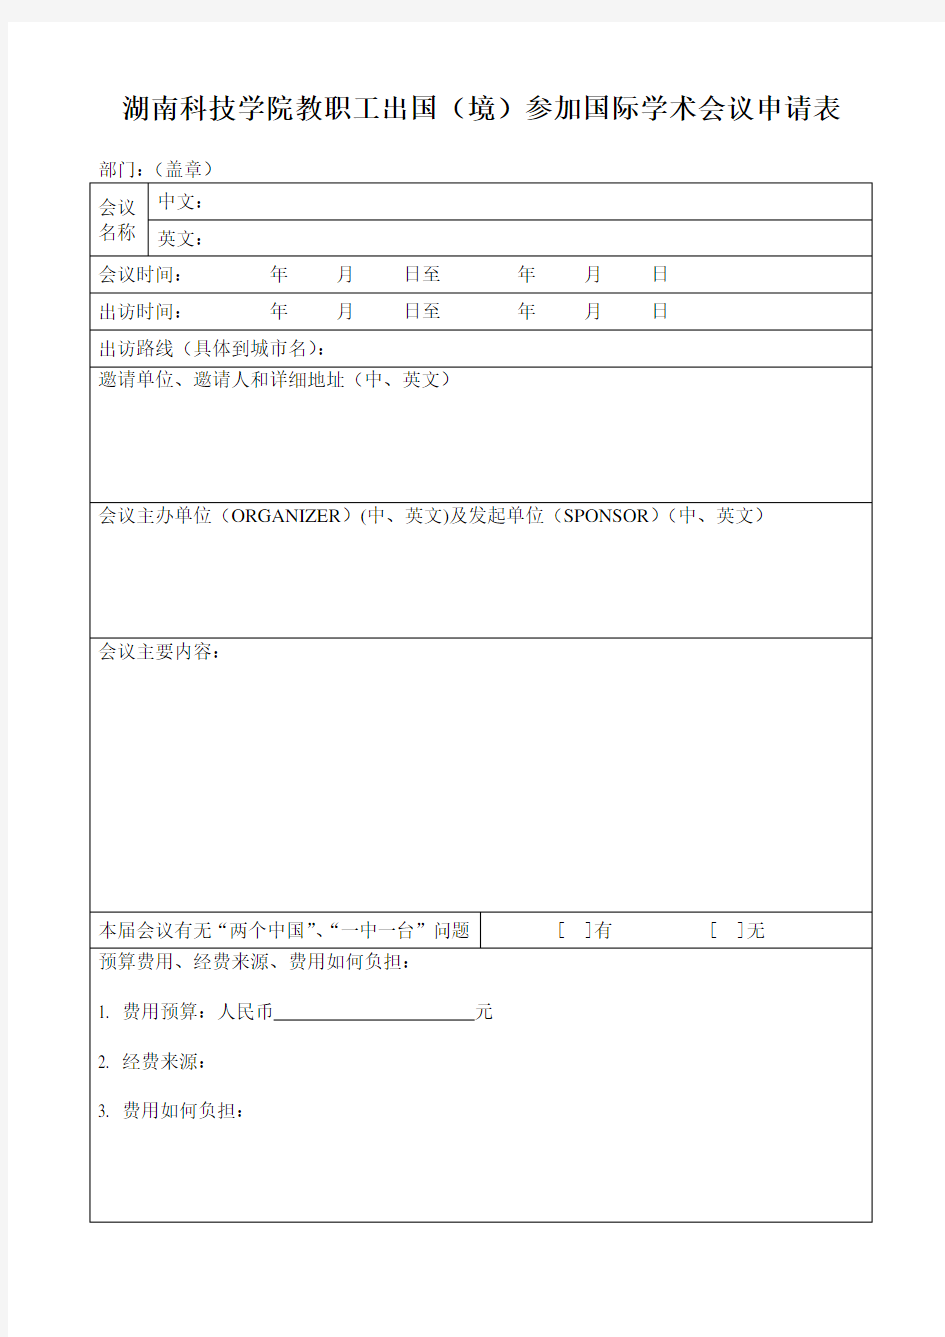 湖南科技学院教职工出国(境)参加国际学术会议申请表 (1)